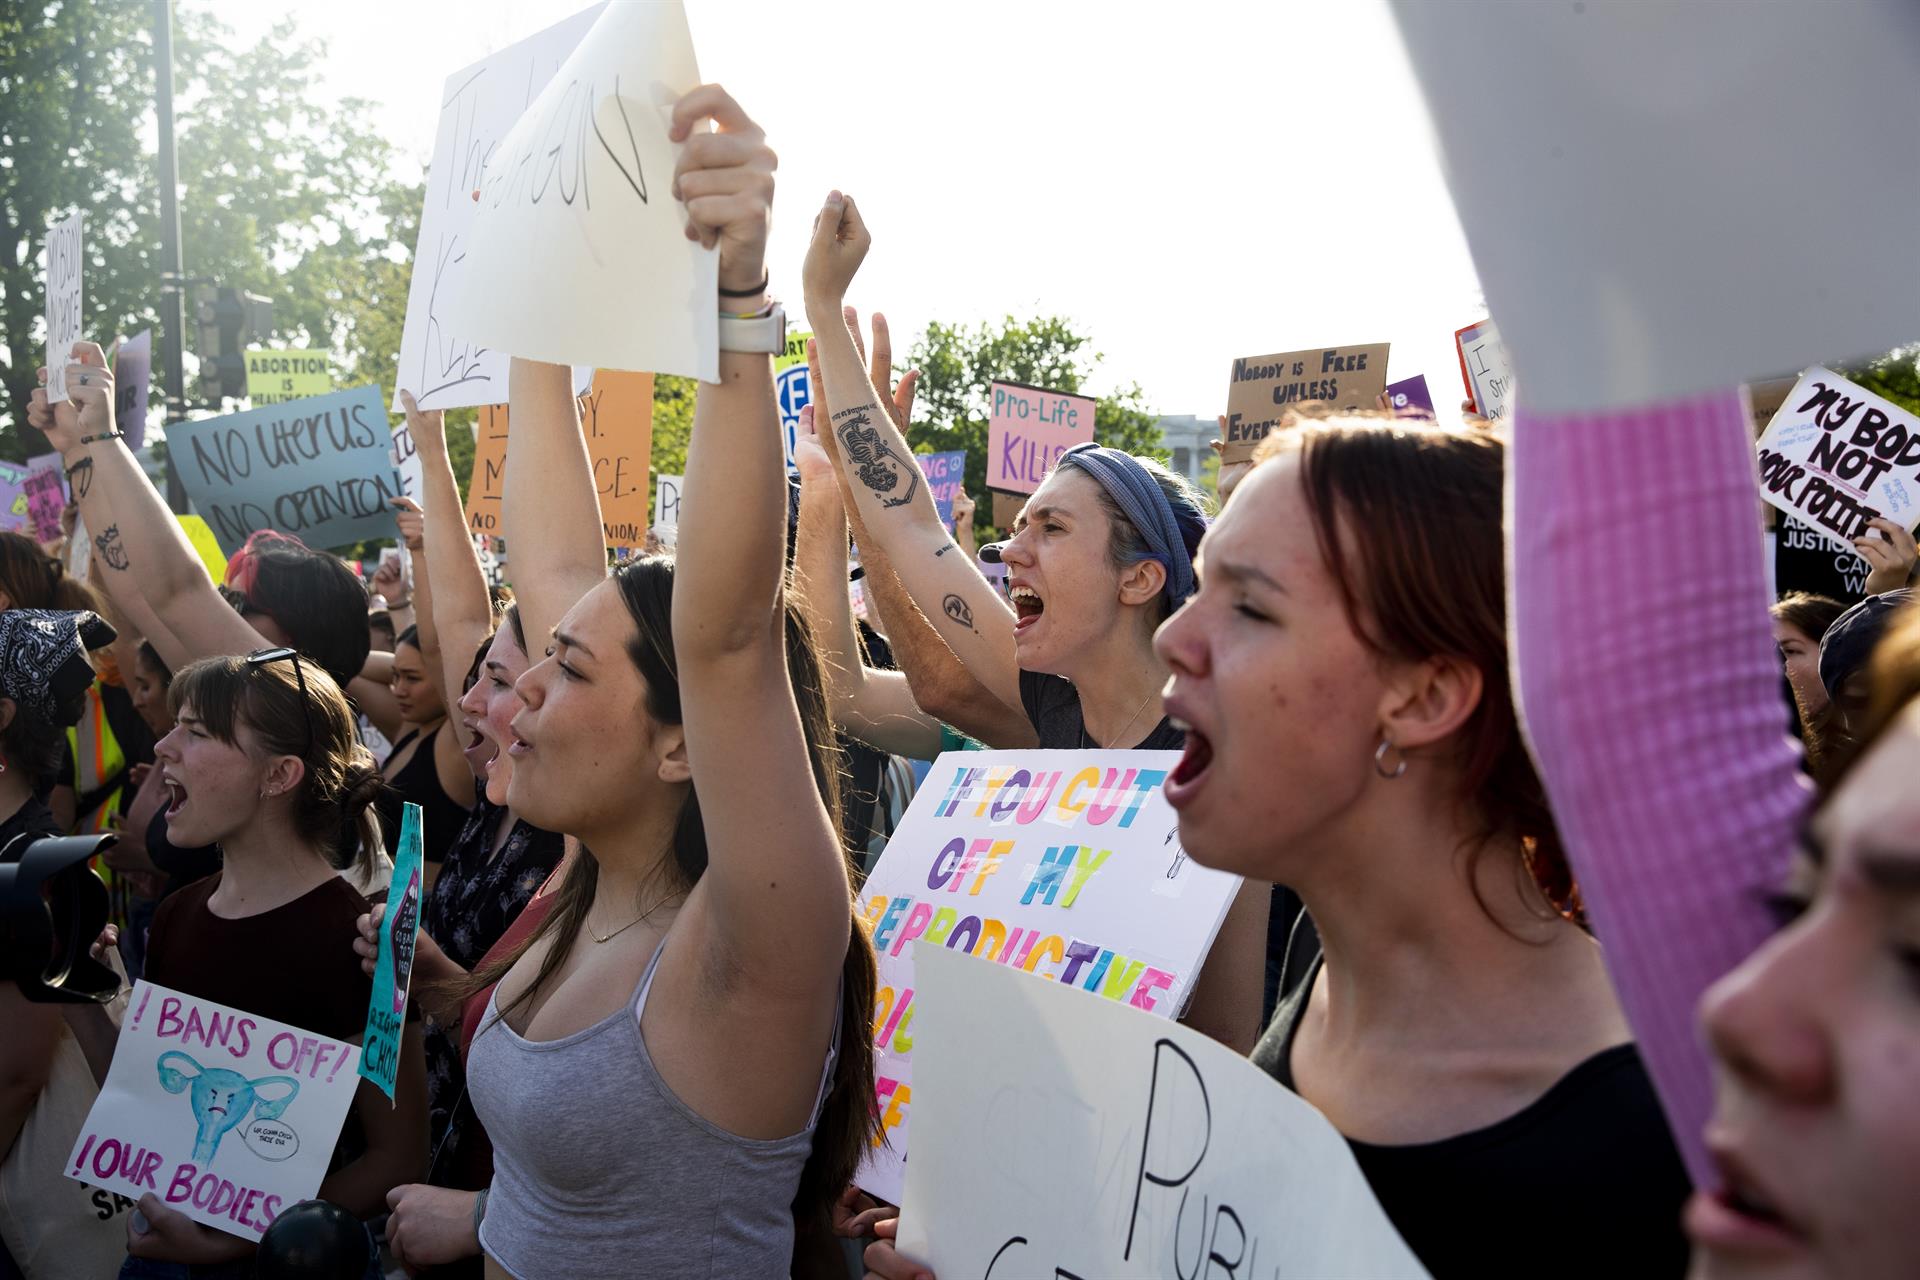 Mulheres se reunem em protestos em frente a Suprema Corte nos Estados Unidos. (Foto: Reprodução/EFE/EPA/Michael Reynolds)